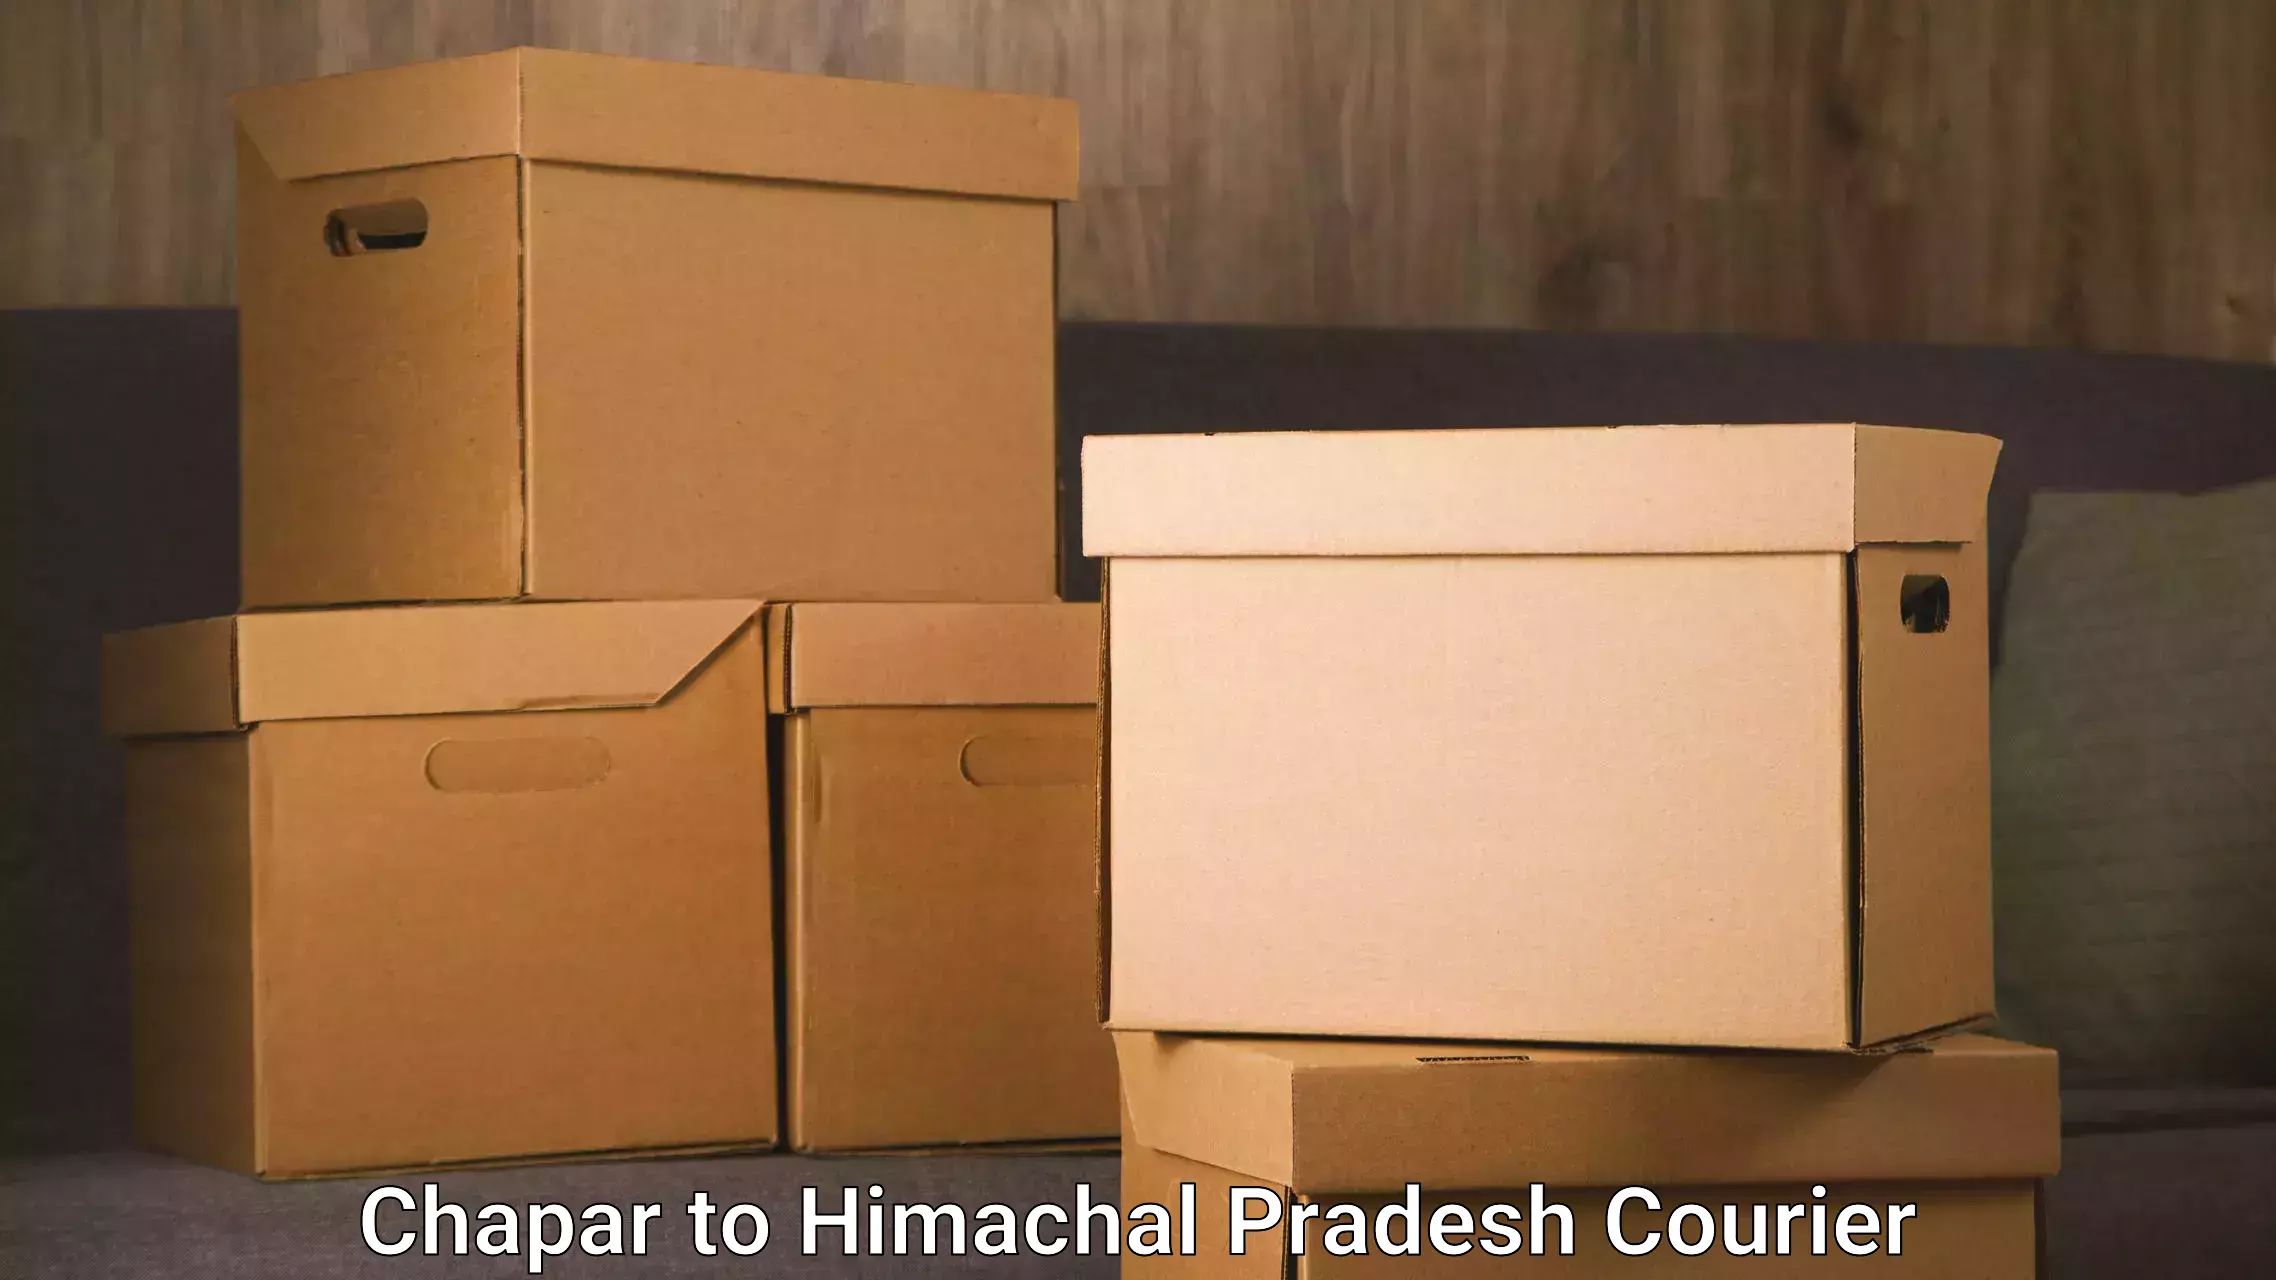 Premium delivery services Chapar to Una Himachal Pradesh